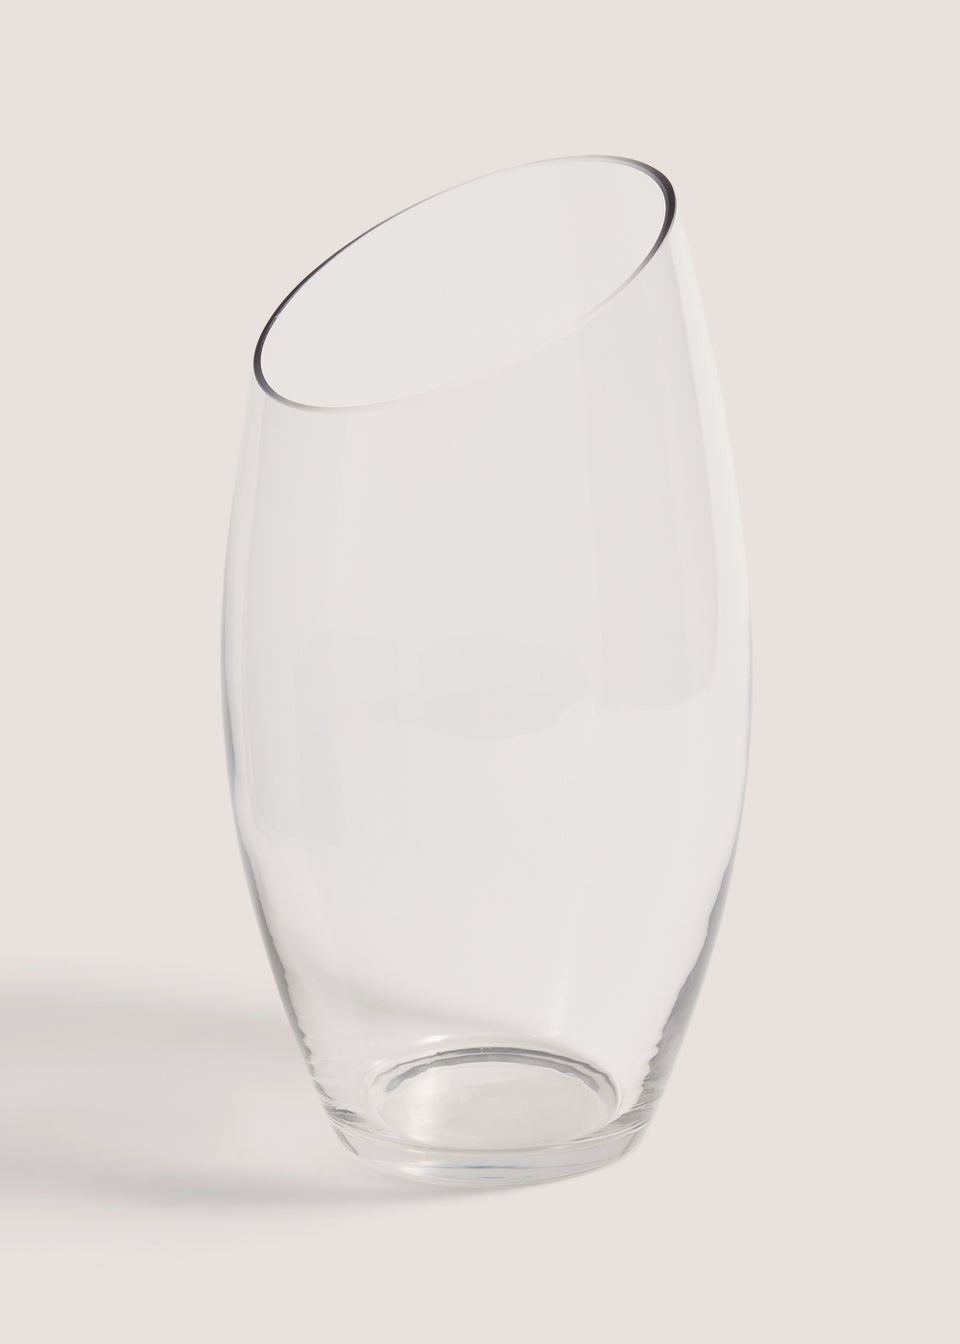 Slant Glass Vase (20cm x 15cm)